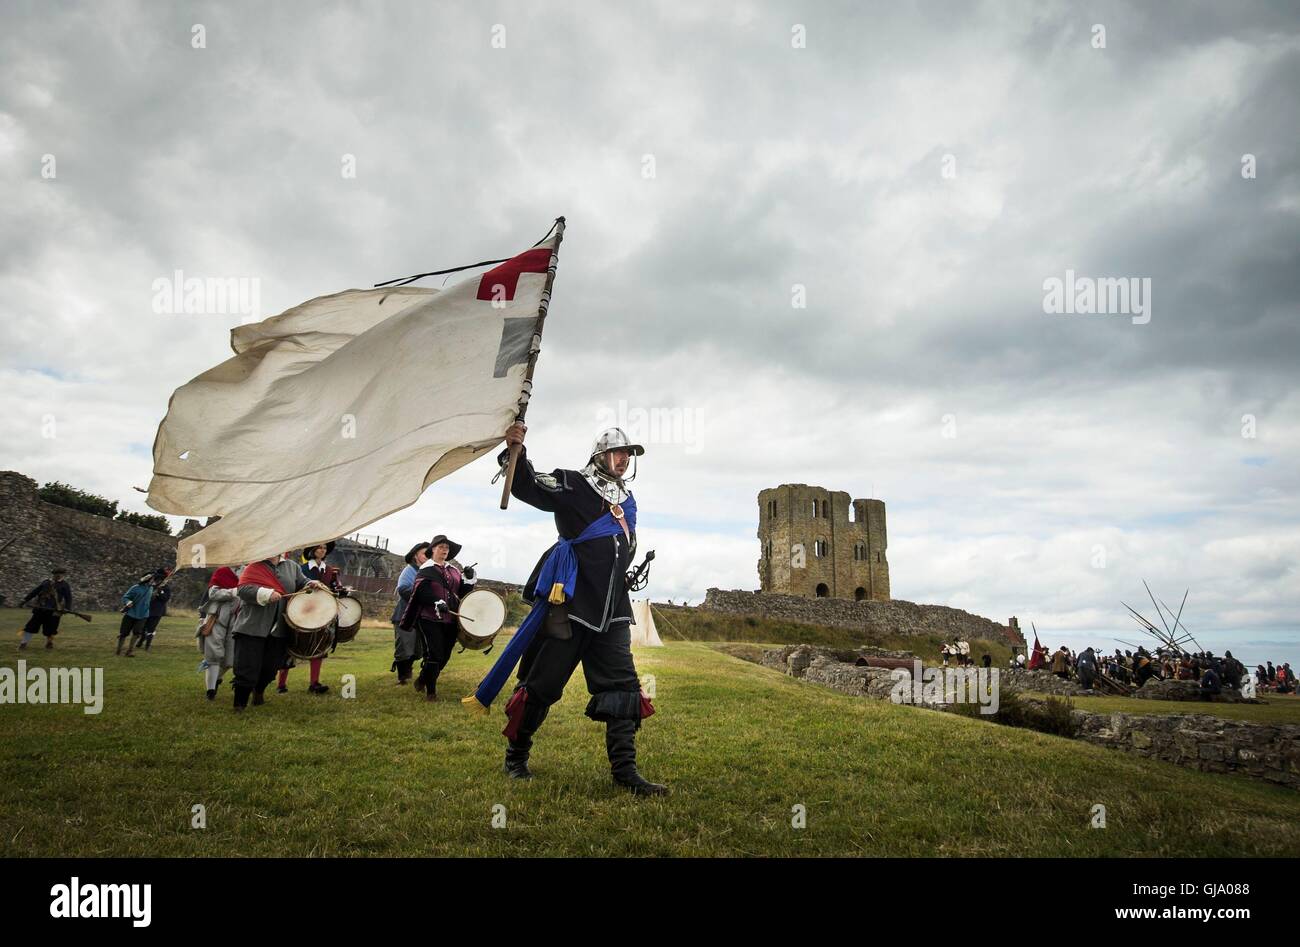 Membri della più antica rievocazione della società nel Regno Unito, il Nodo sigillato, rivivere il 1645 Grande Assedio del Castello di Scarborough durante la Guerra Civile Inglese, a Scarborough Castle nello Yorkshire. Foto Stock